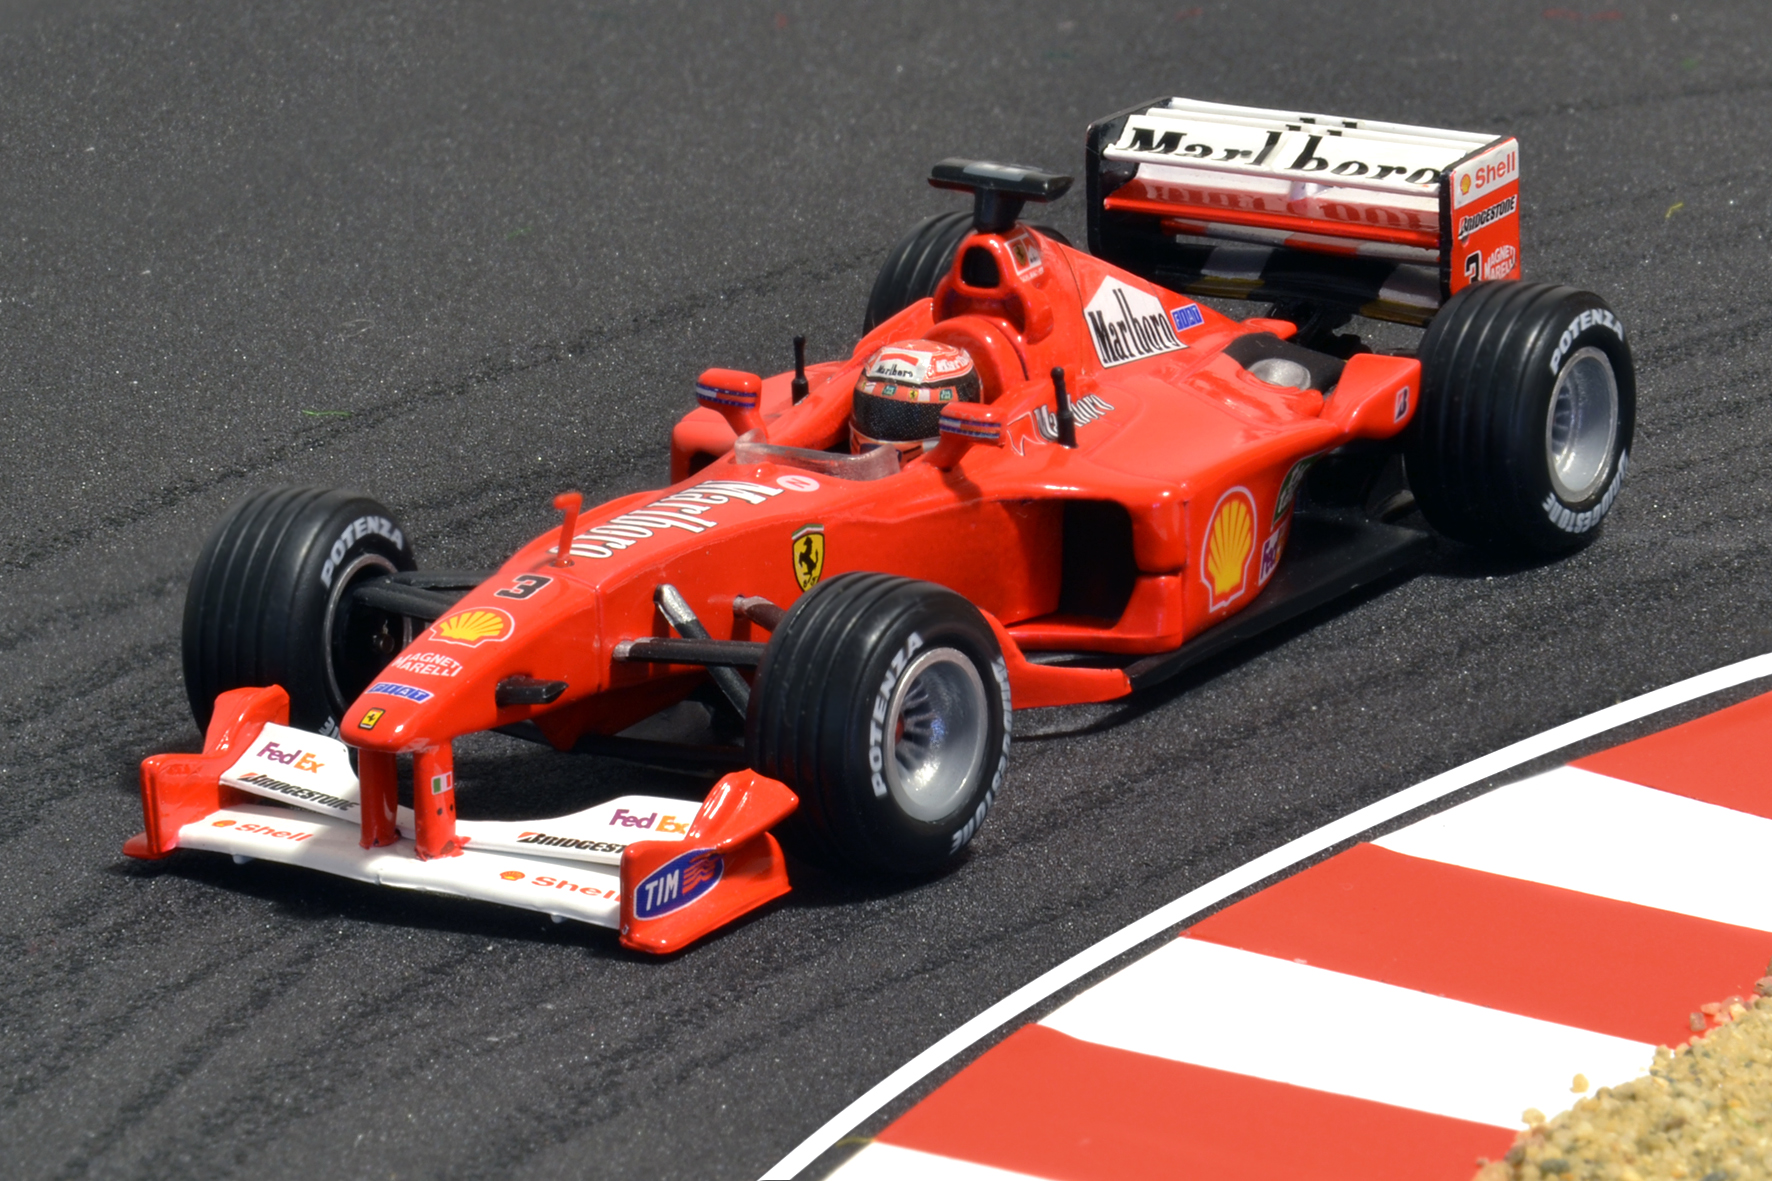 Év:2000<br />Modell: F1-2000<br />Pilóta: Michael Schumacher<br />Gyártó: Hot Wheels